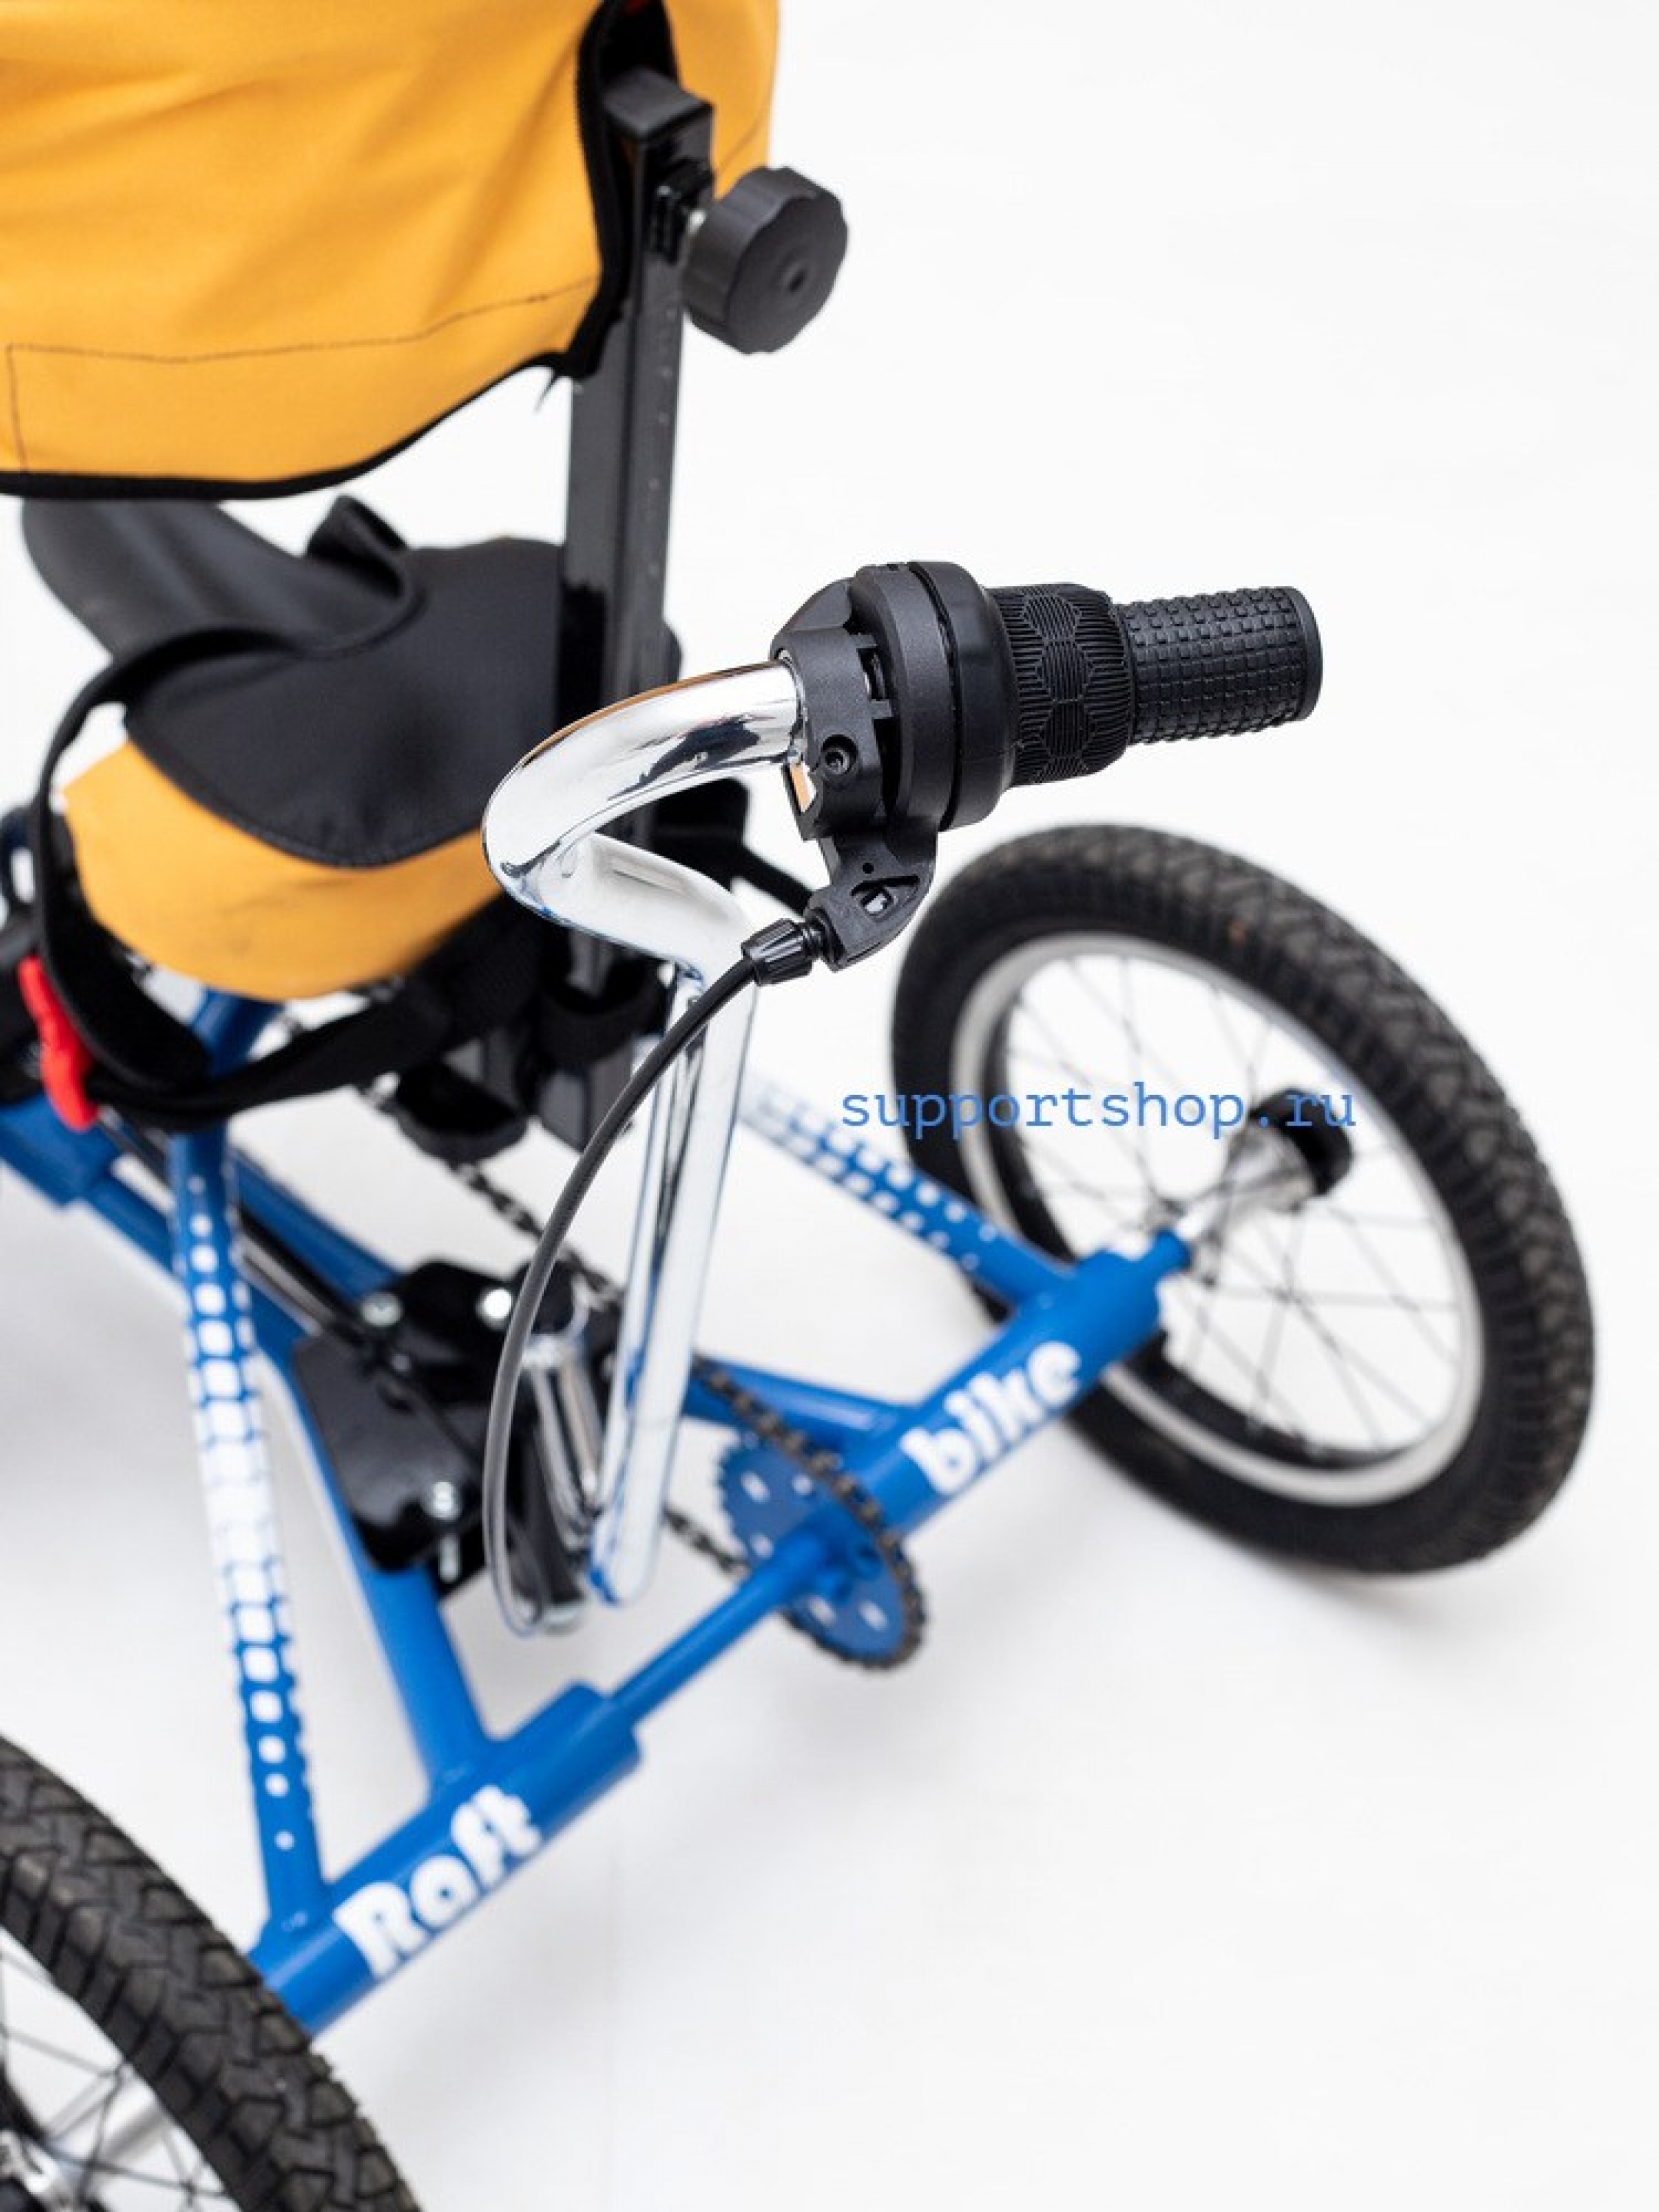 Велосипед для детей с ДЦП RAFT BIKE 1